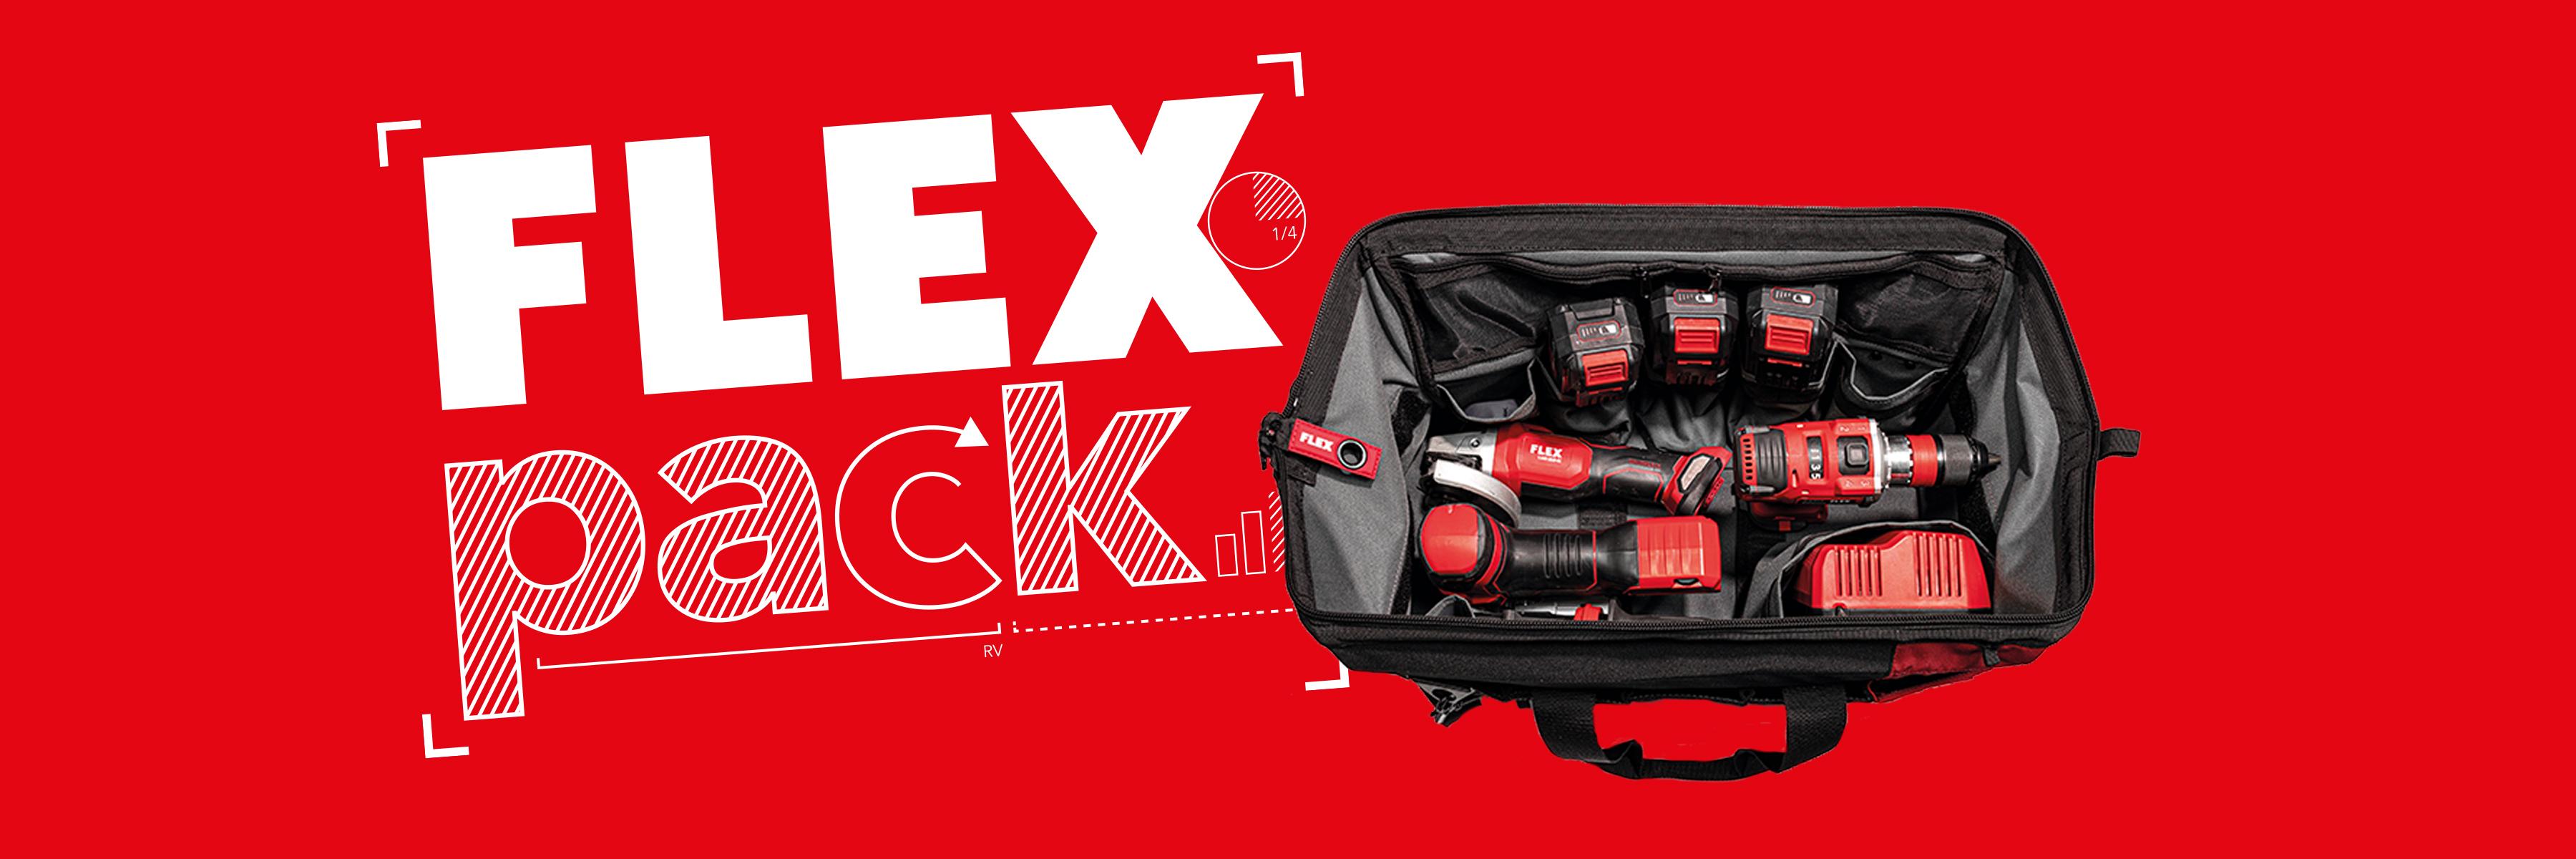 Promozione FLEXPACK: 3 macchine cordless FLEX con caricabatterie e batterie in borsa